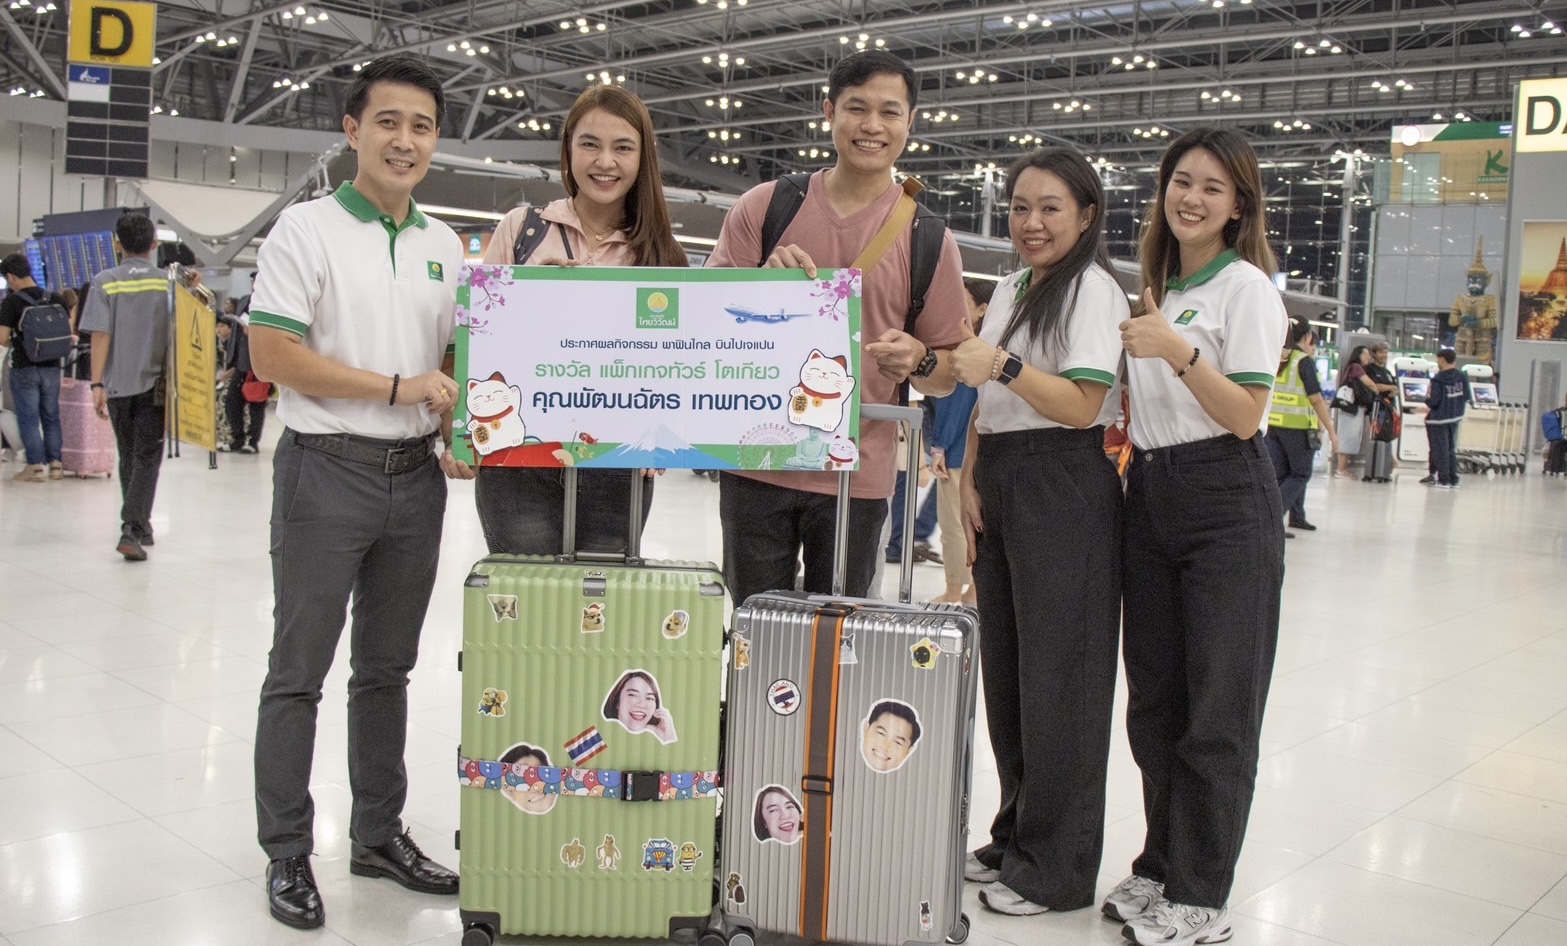 ประกันภัยไทยวิวัฒน์ มอบรางวัลลูกค้าประกันเดินทางต่างประเทศผู้โชคดีในแคมเปญ 